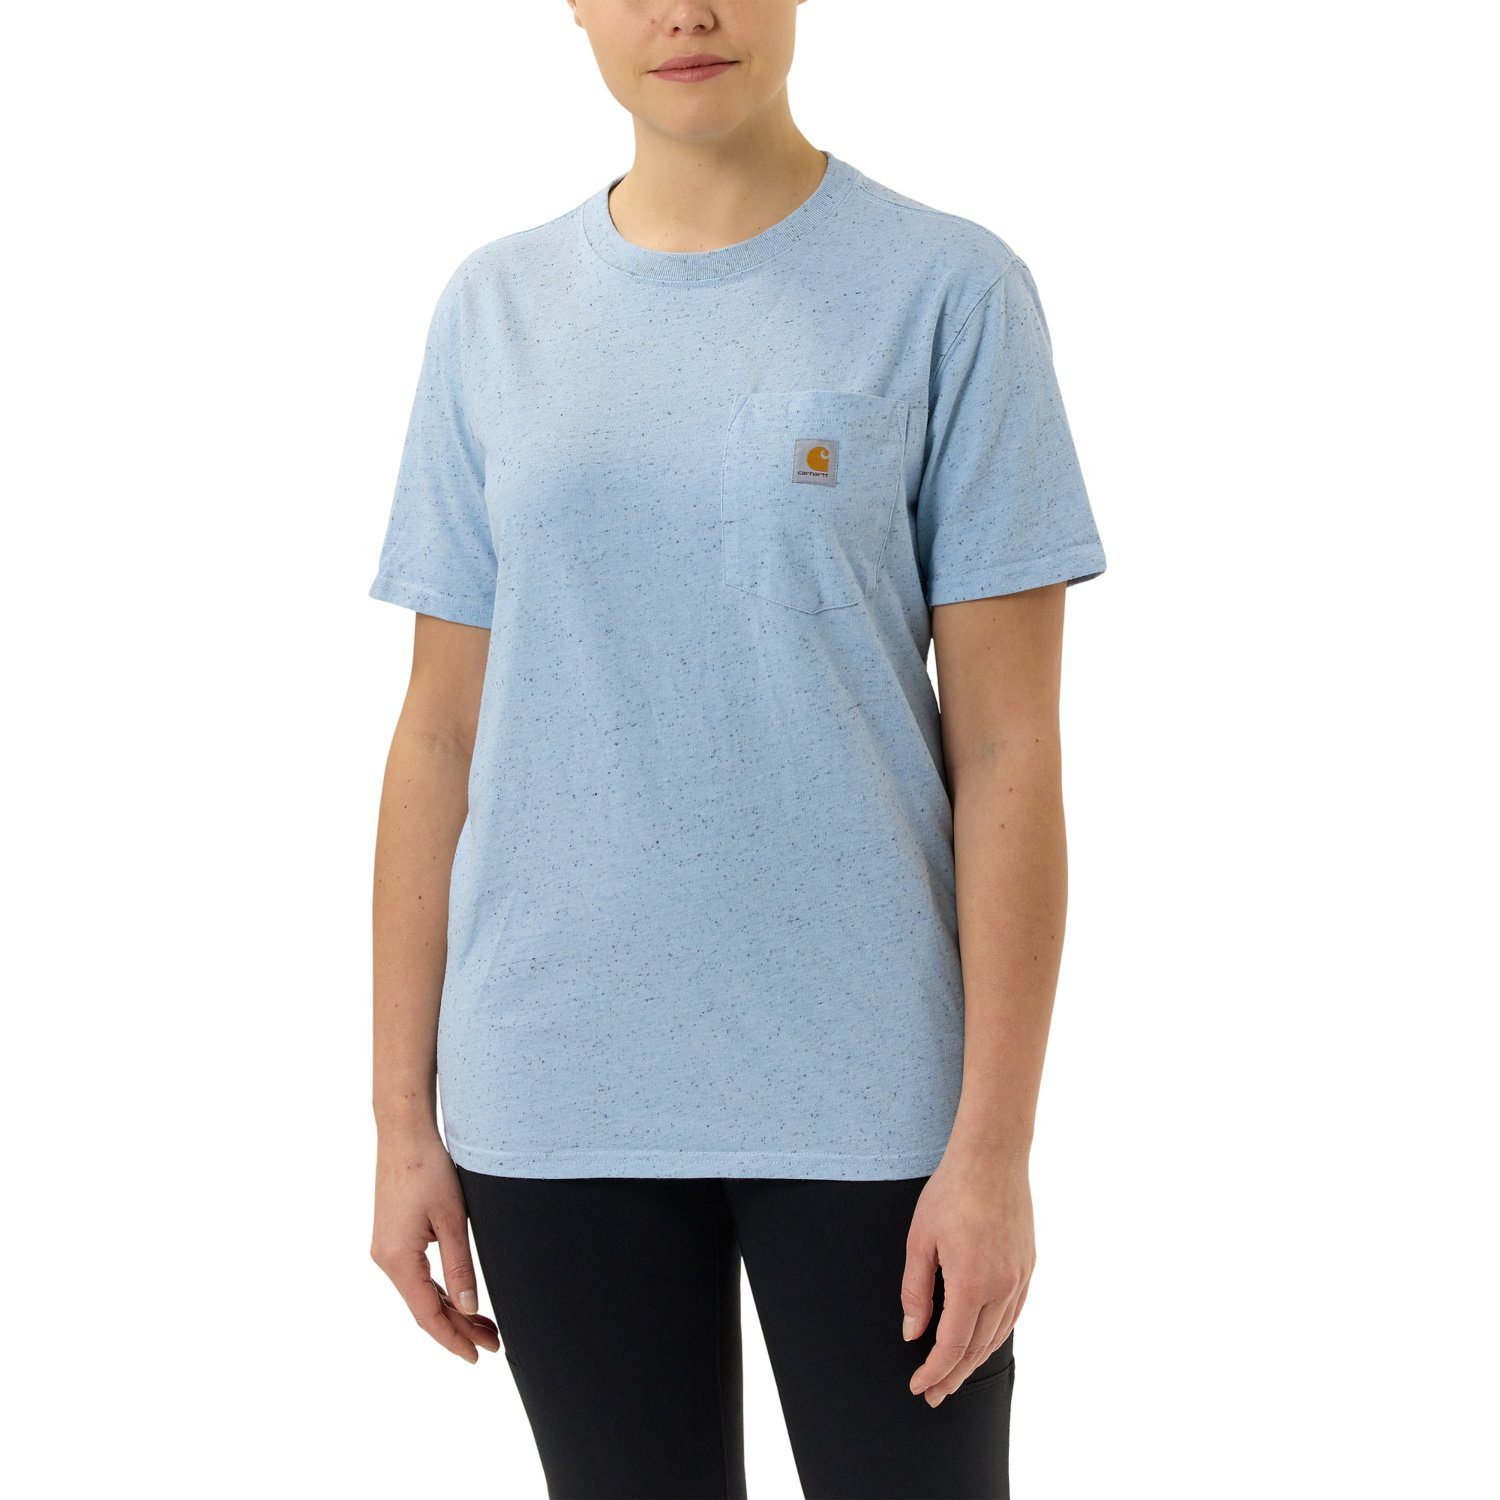 Carhartt T-Shirt Pocket Damen Carhartt Adult T-Shirt Short-Sleeve powder nep Heavyweight Loose blue Fit